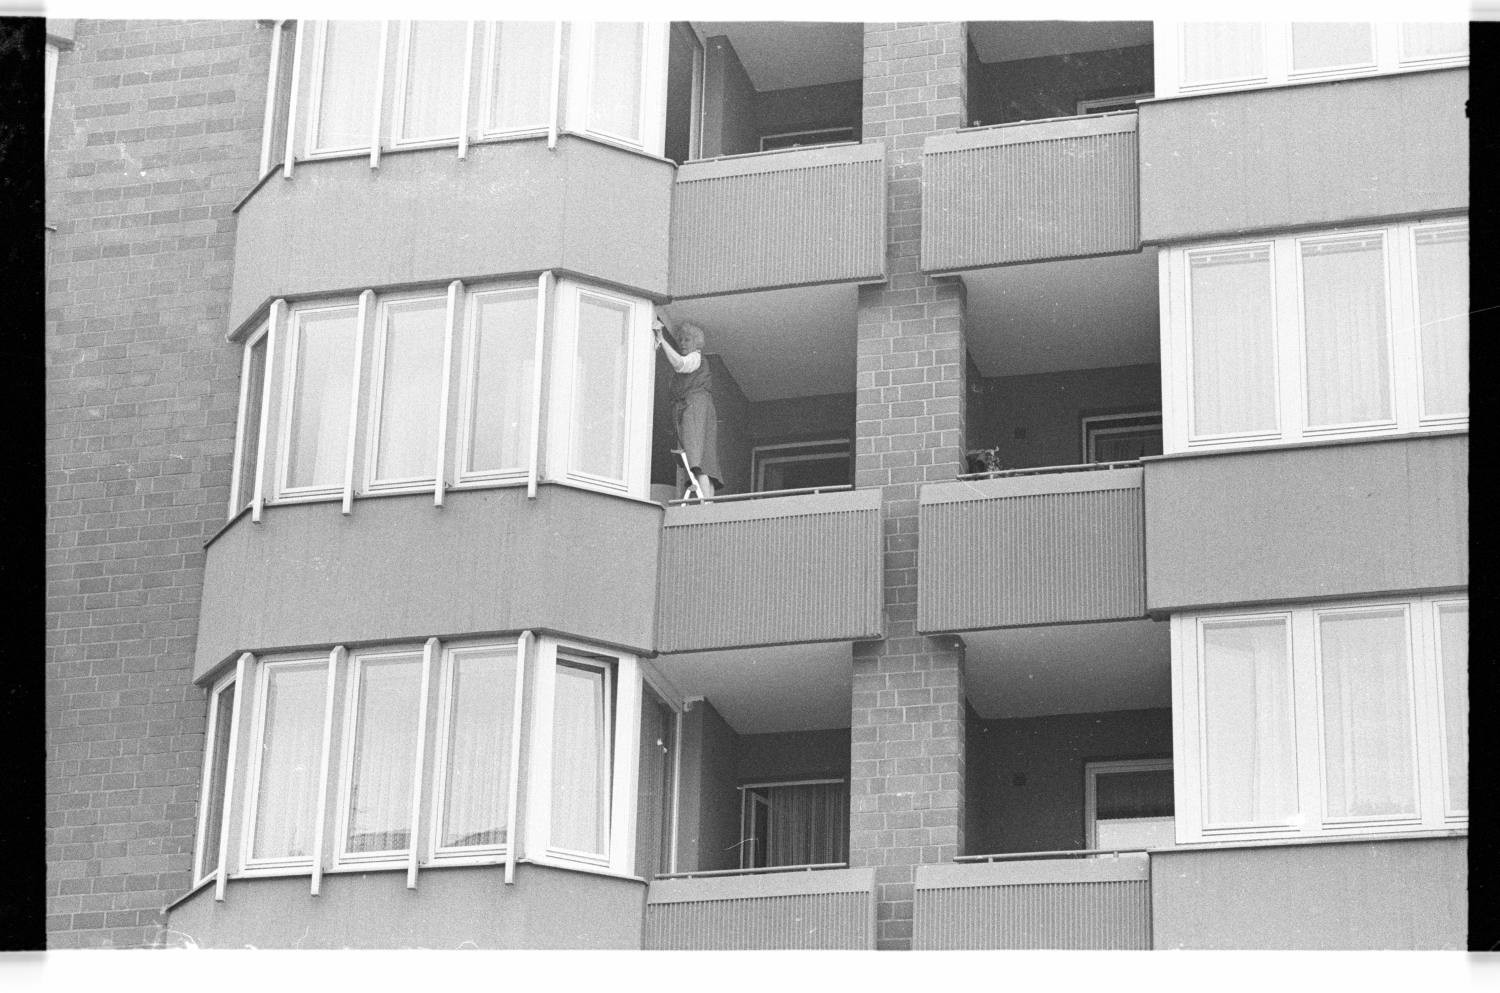 Kleinbildnegative: Seniorenwohnhäuser, Kurfüsten-, Froben- und Winterfeldtstraße, 1982 (Museen Tempelhof-Schöneberg/Jürgen Henschel RR-F)